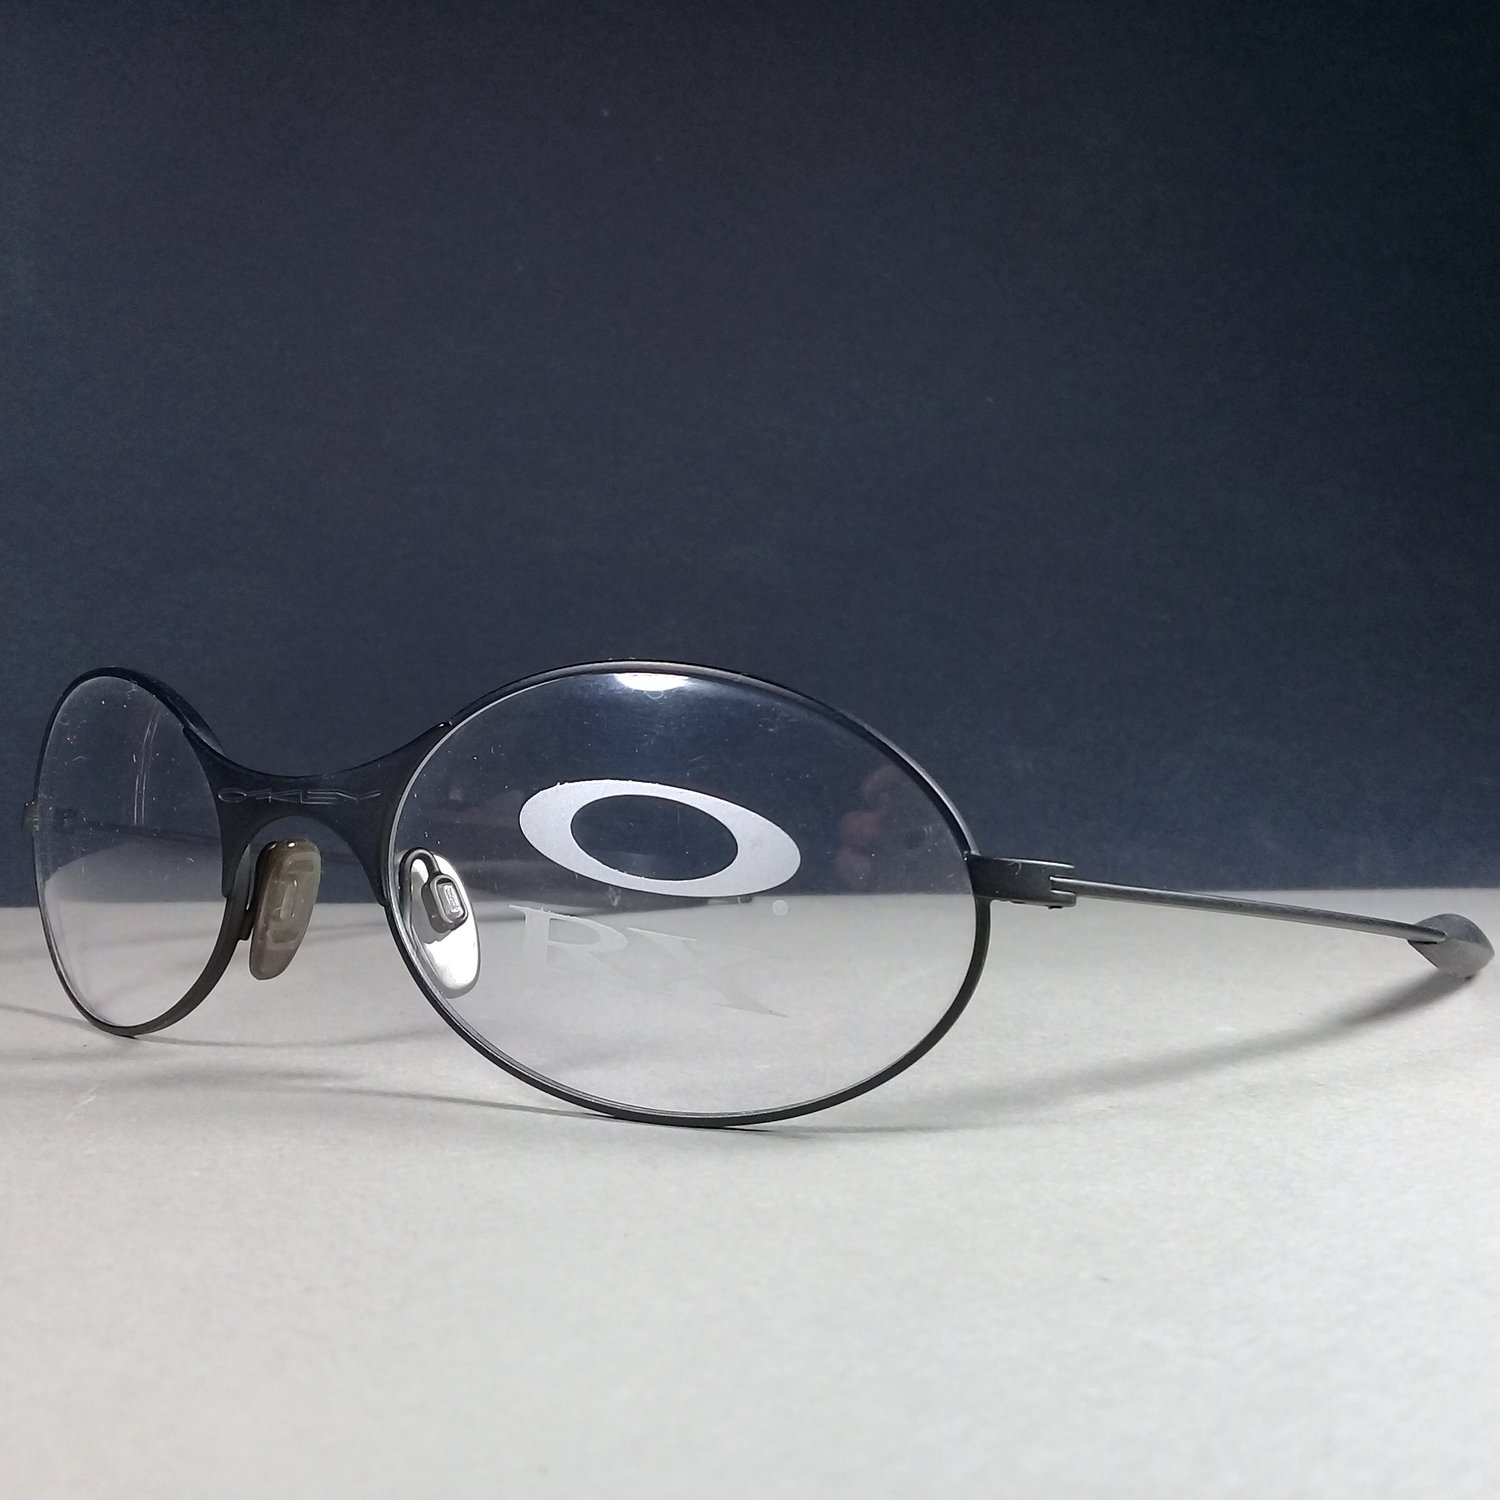 Oakley Black Oval Metal/Rubber Vintage Rx Eyeglasses Frames Made in USA